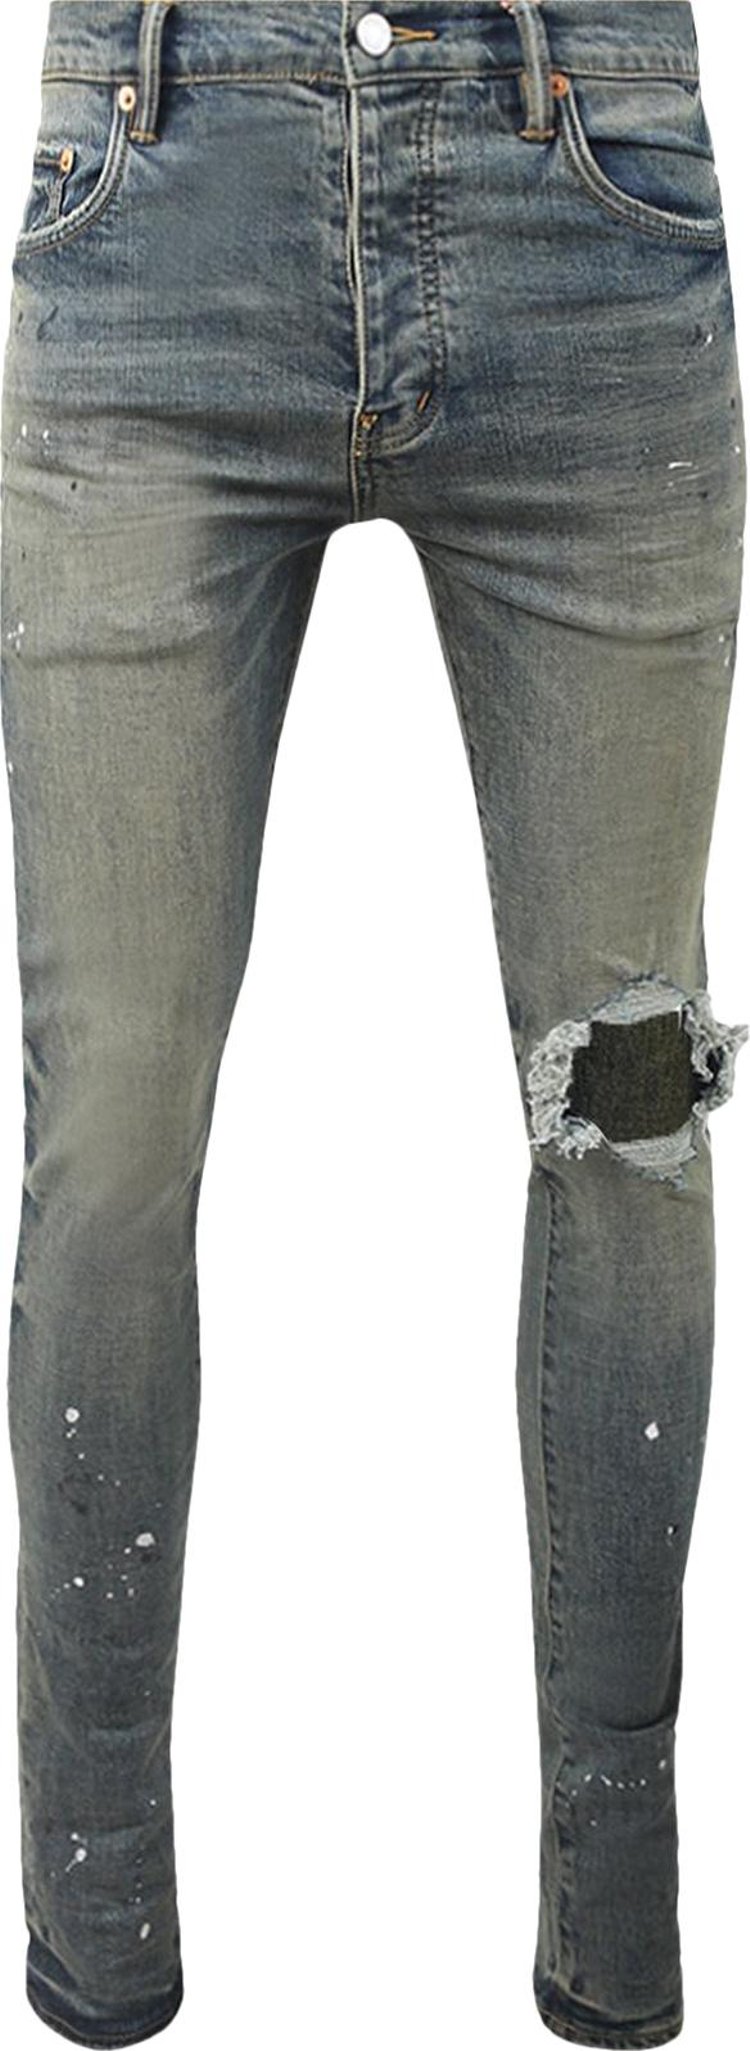 Buy PURPLE BRAND Mid Paint Blowout Jeans 'Blue' - P001 MIPB122